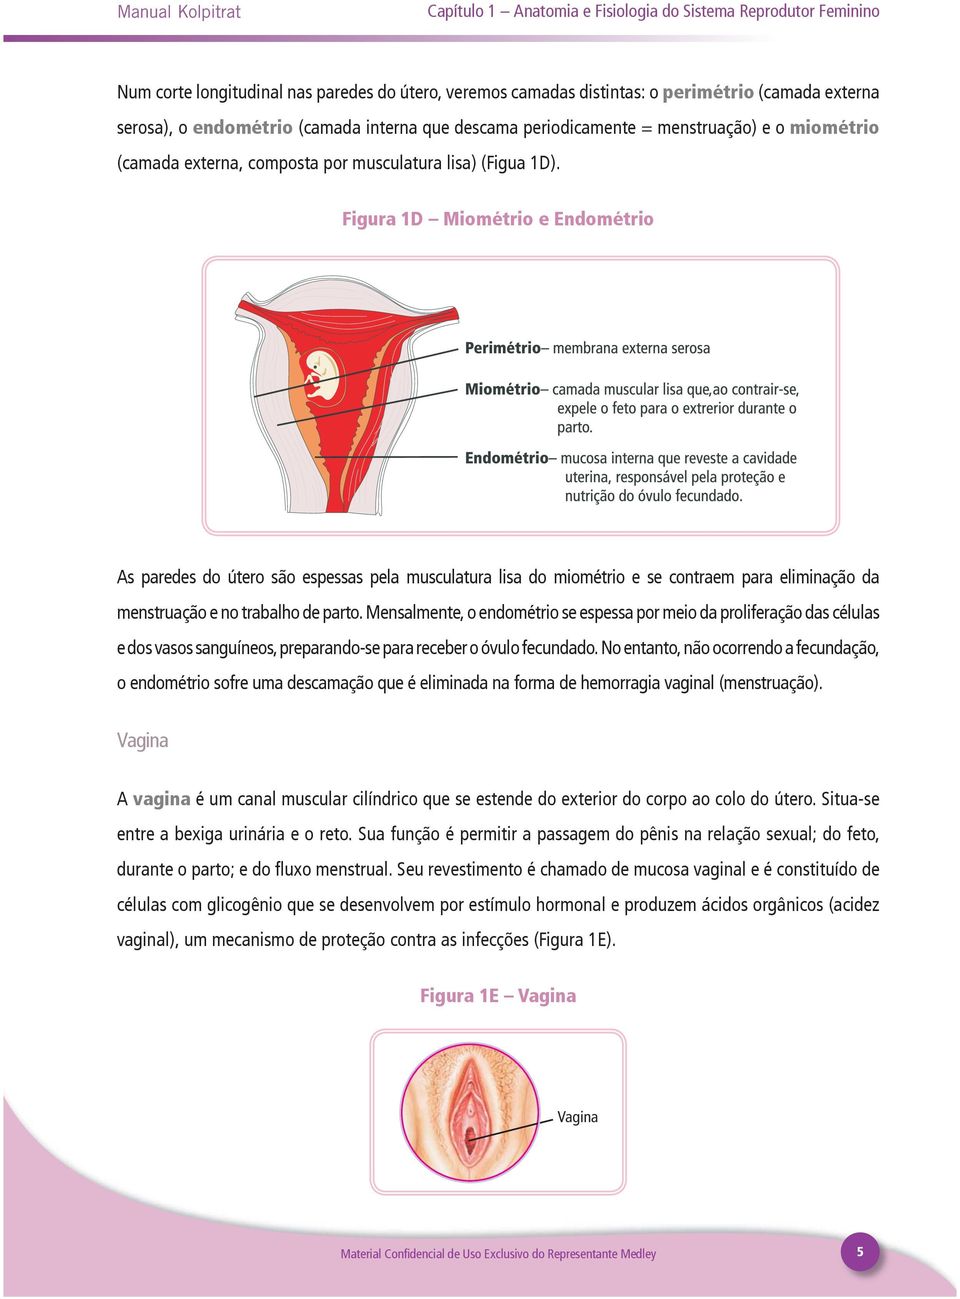 Figura 1D Miométrio e Endométrio As paredes do útero são espessas pela musculatura lisa do miométrio e se contraem para eliminação da menstruação e no trabalho de parto.